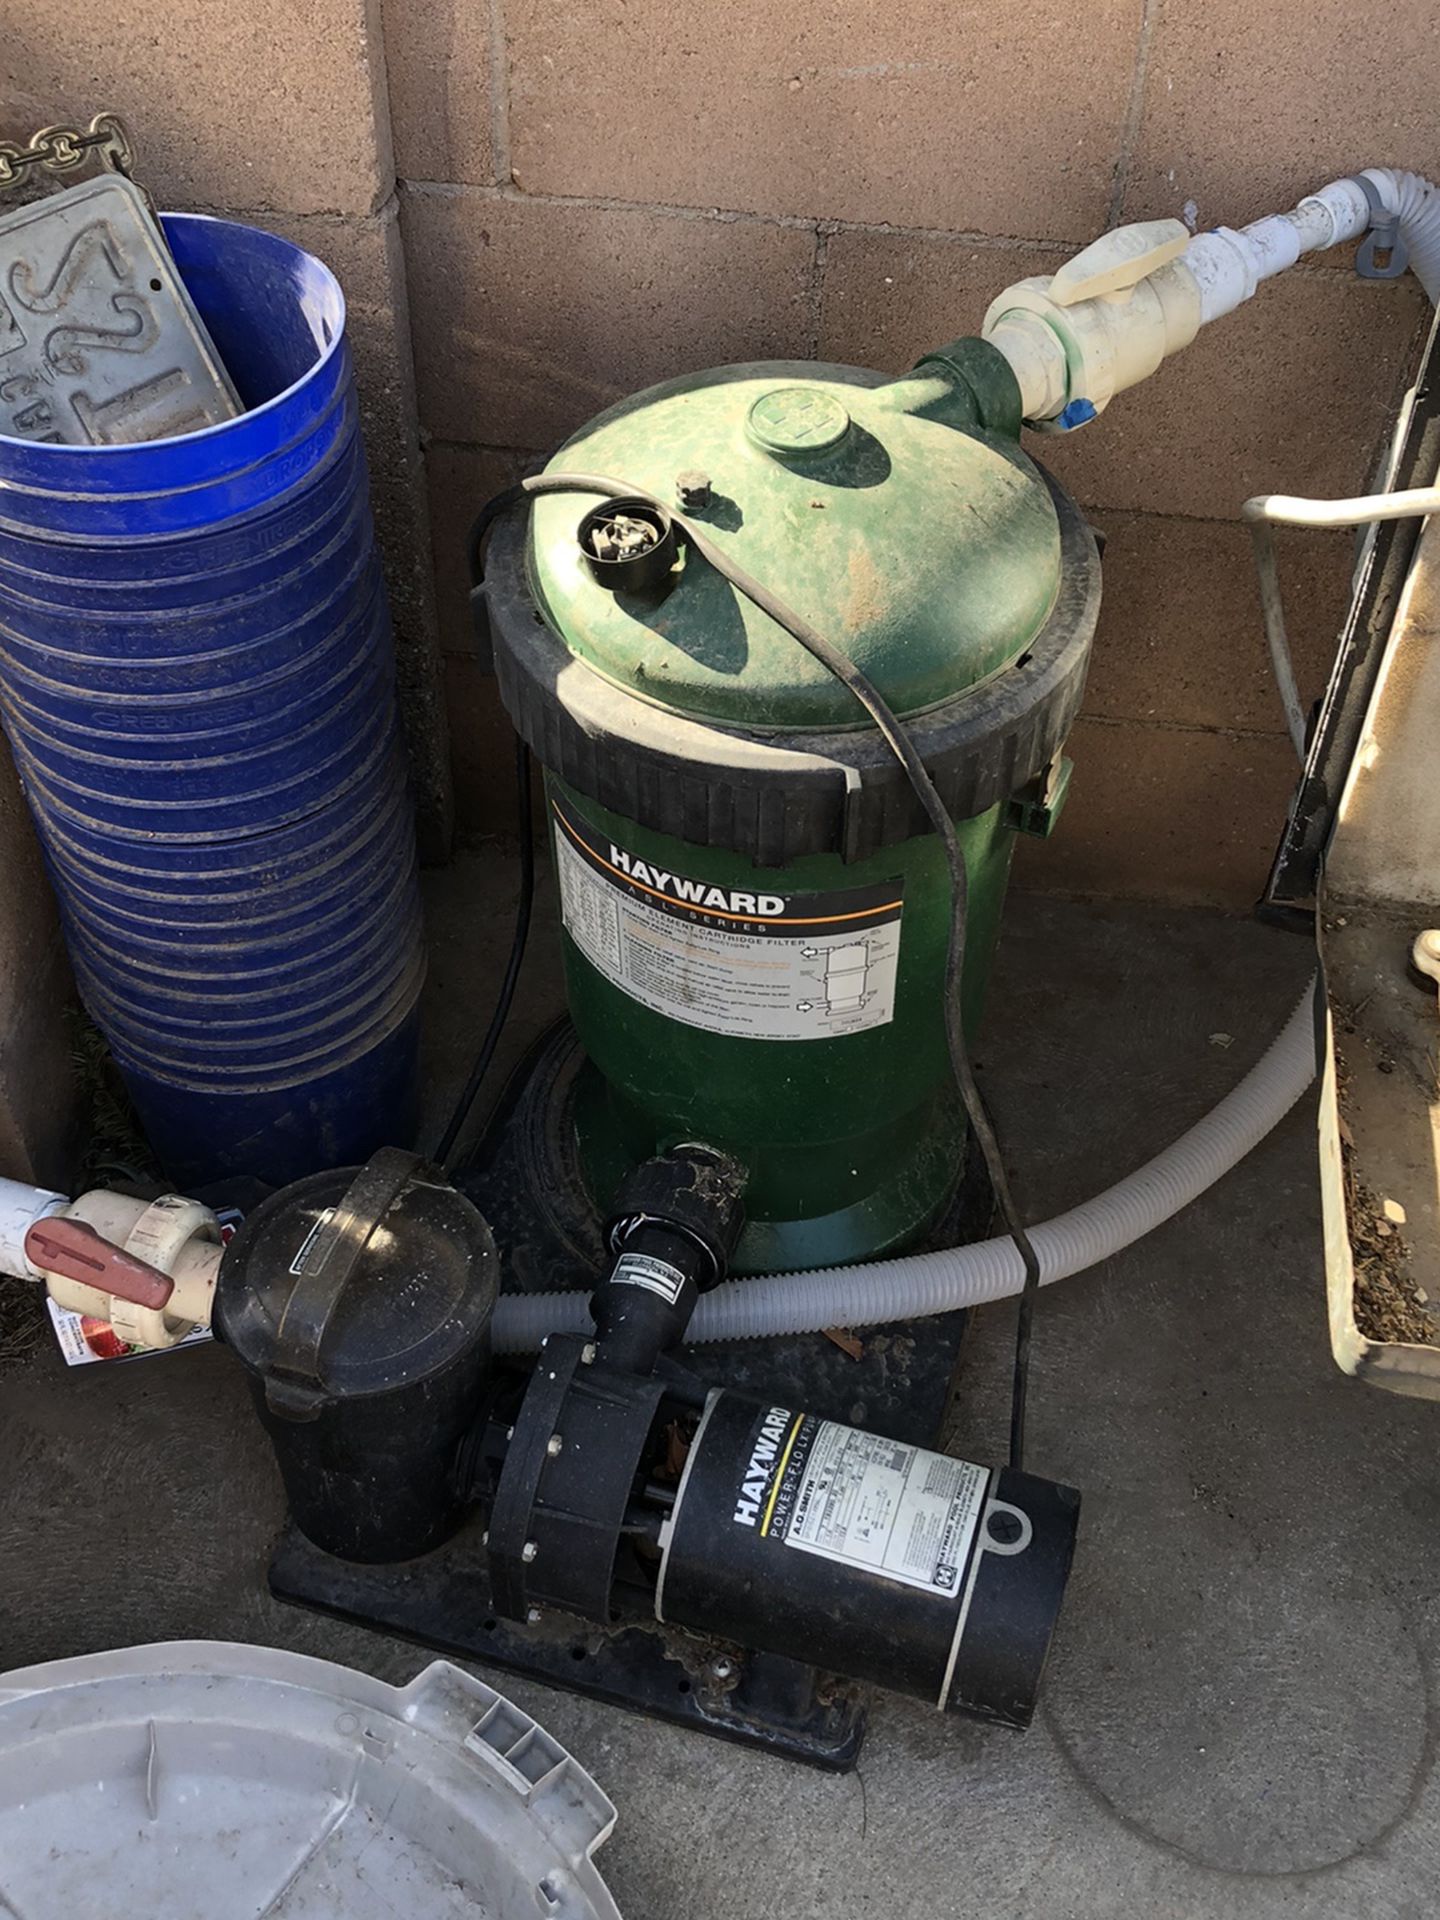 Hayward Pool Pump And Filter